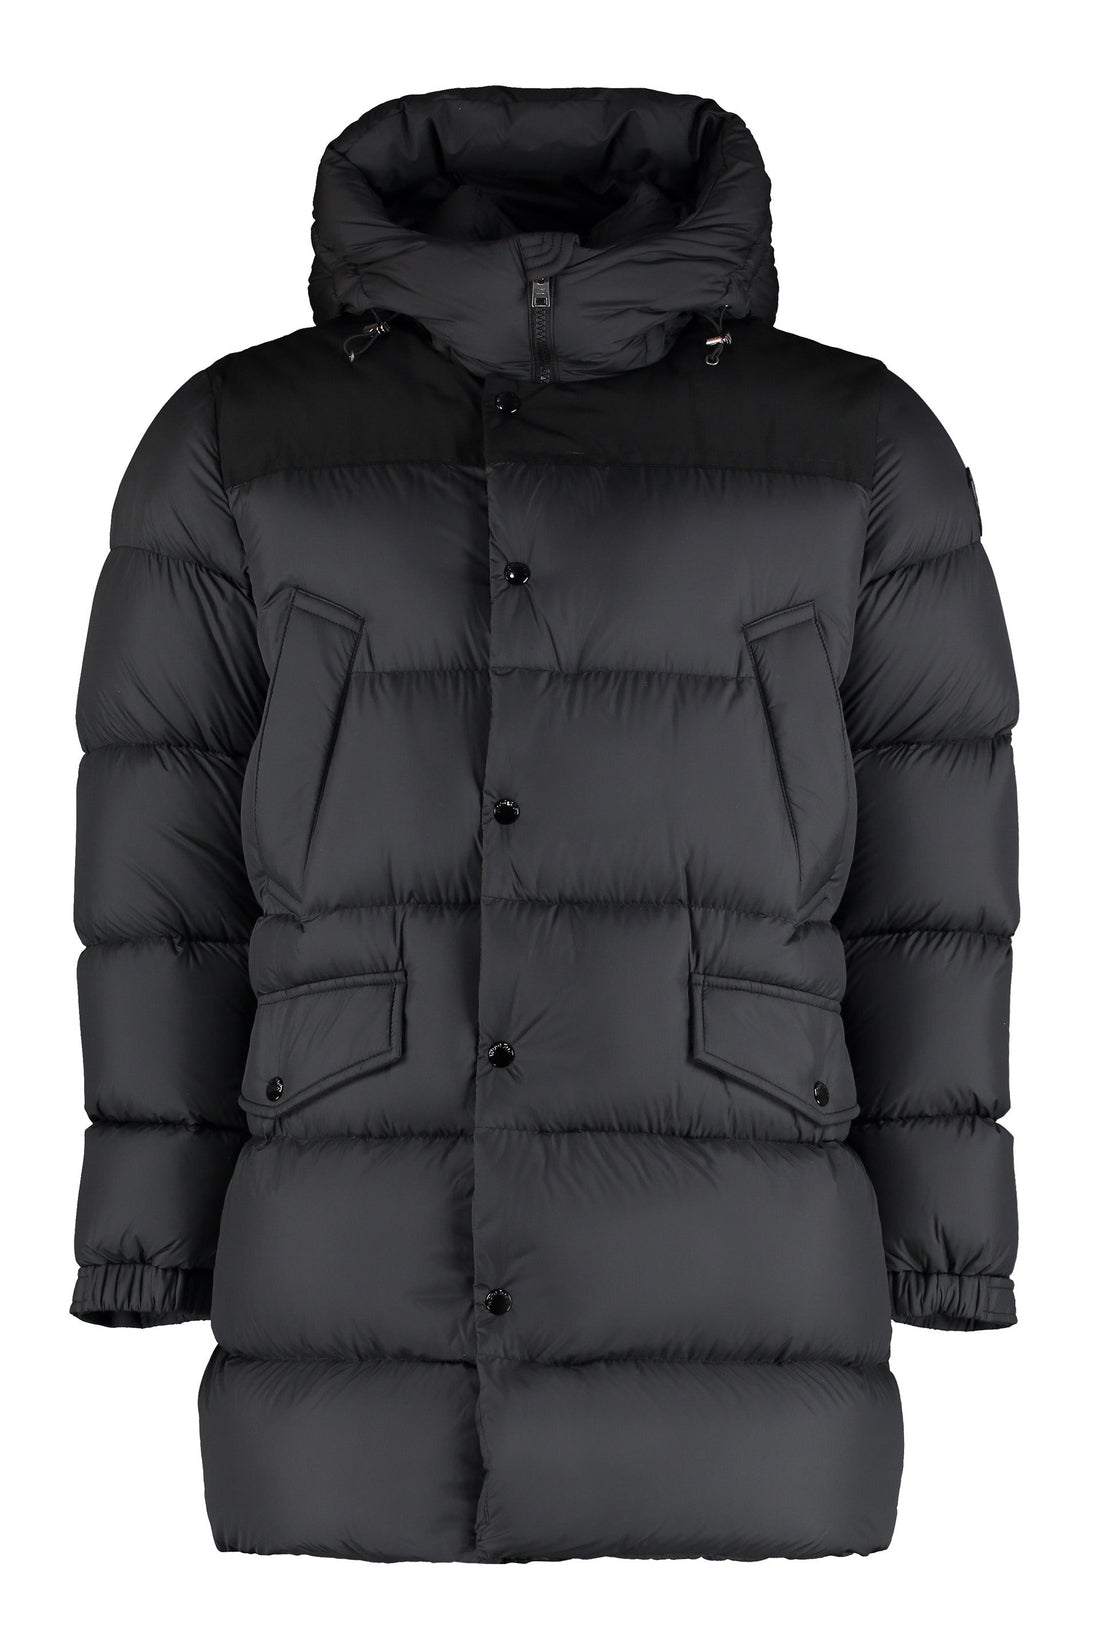 Woolrich-OUTLET-SALE-Sierra Long hooded down jacket-ARCHIVIST